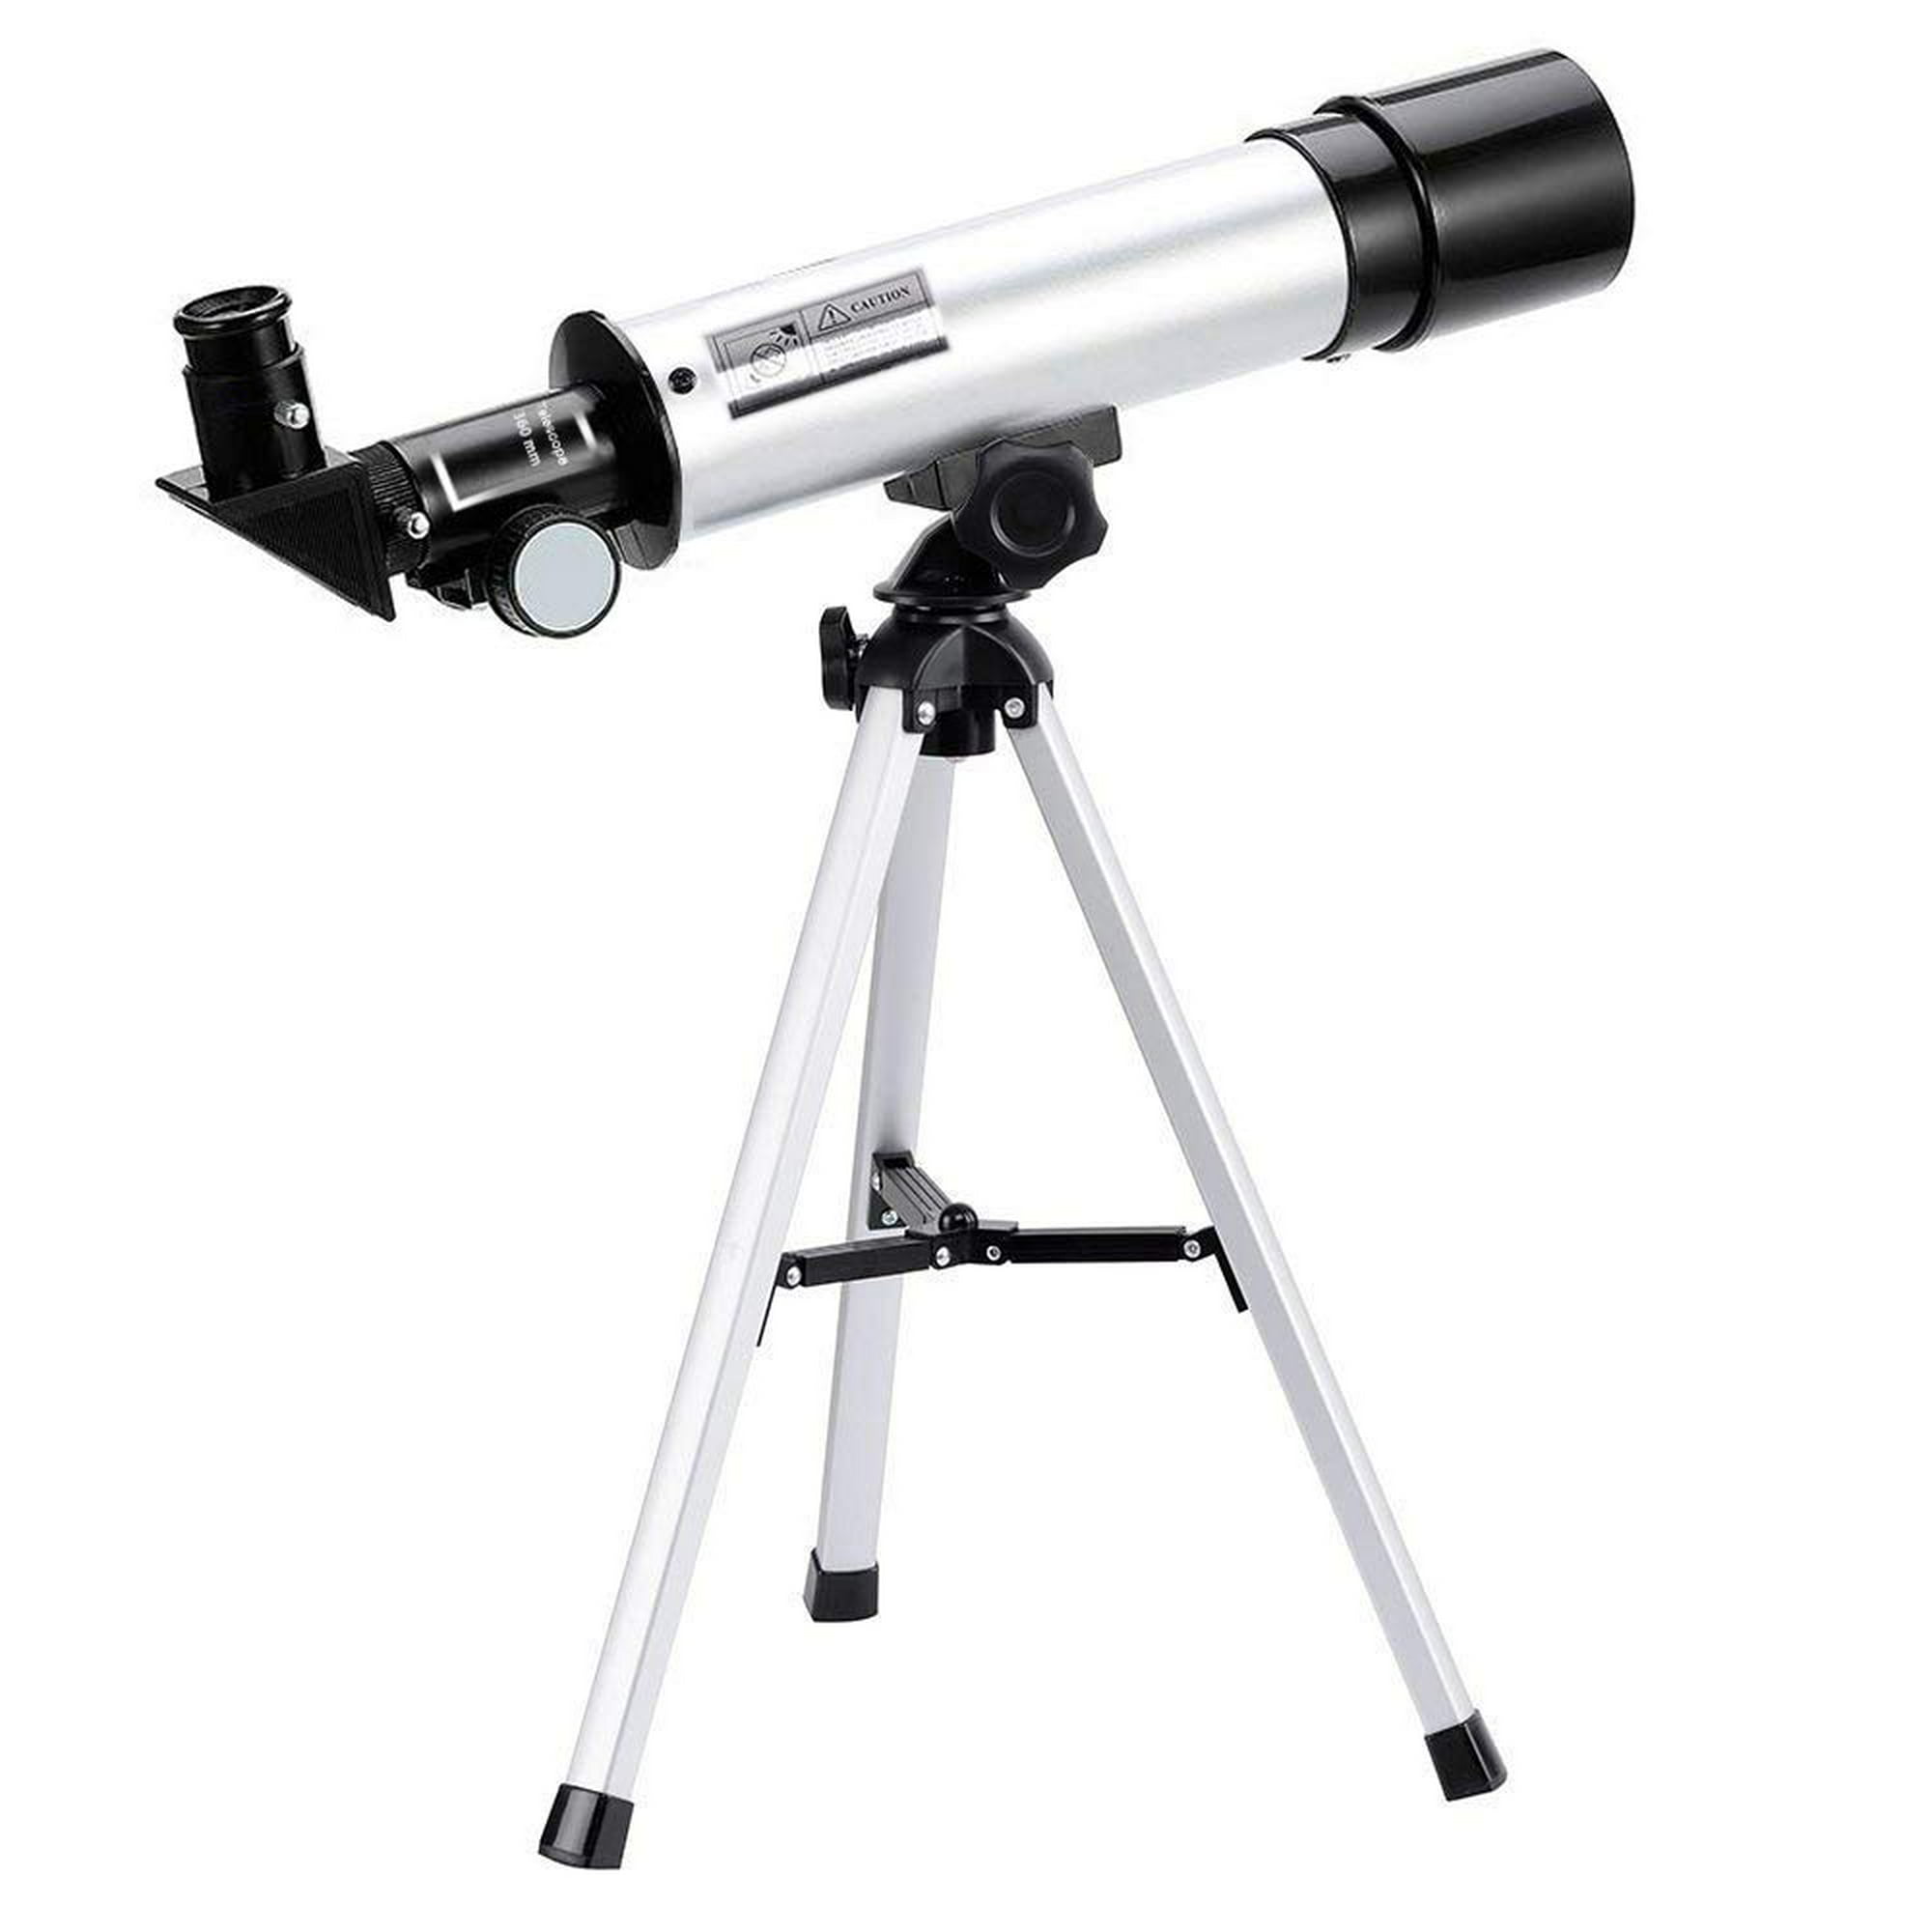 Telescopio para astronomía, telescopio portátil, fácil de montar y usar,  ideal para niños y adultos principiantes, telescopio astronómico para luna